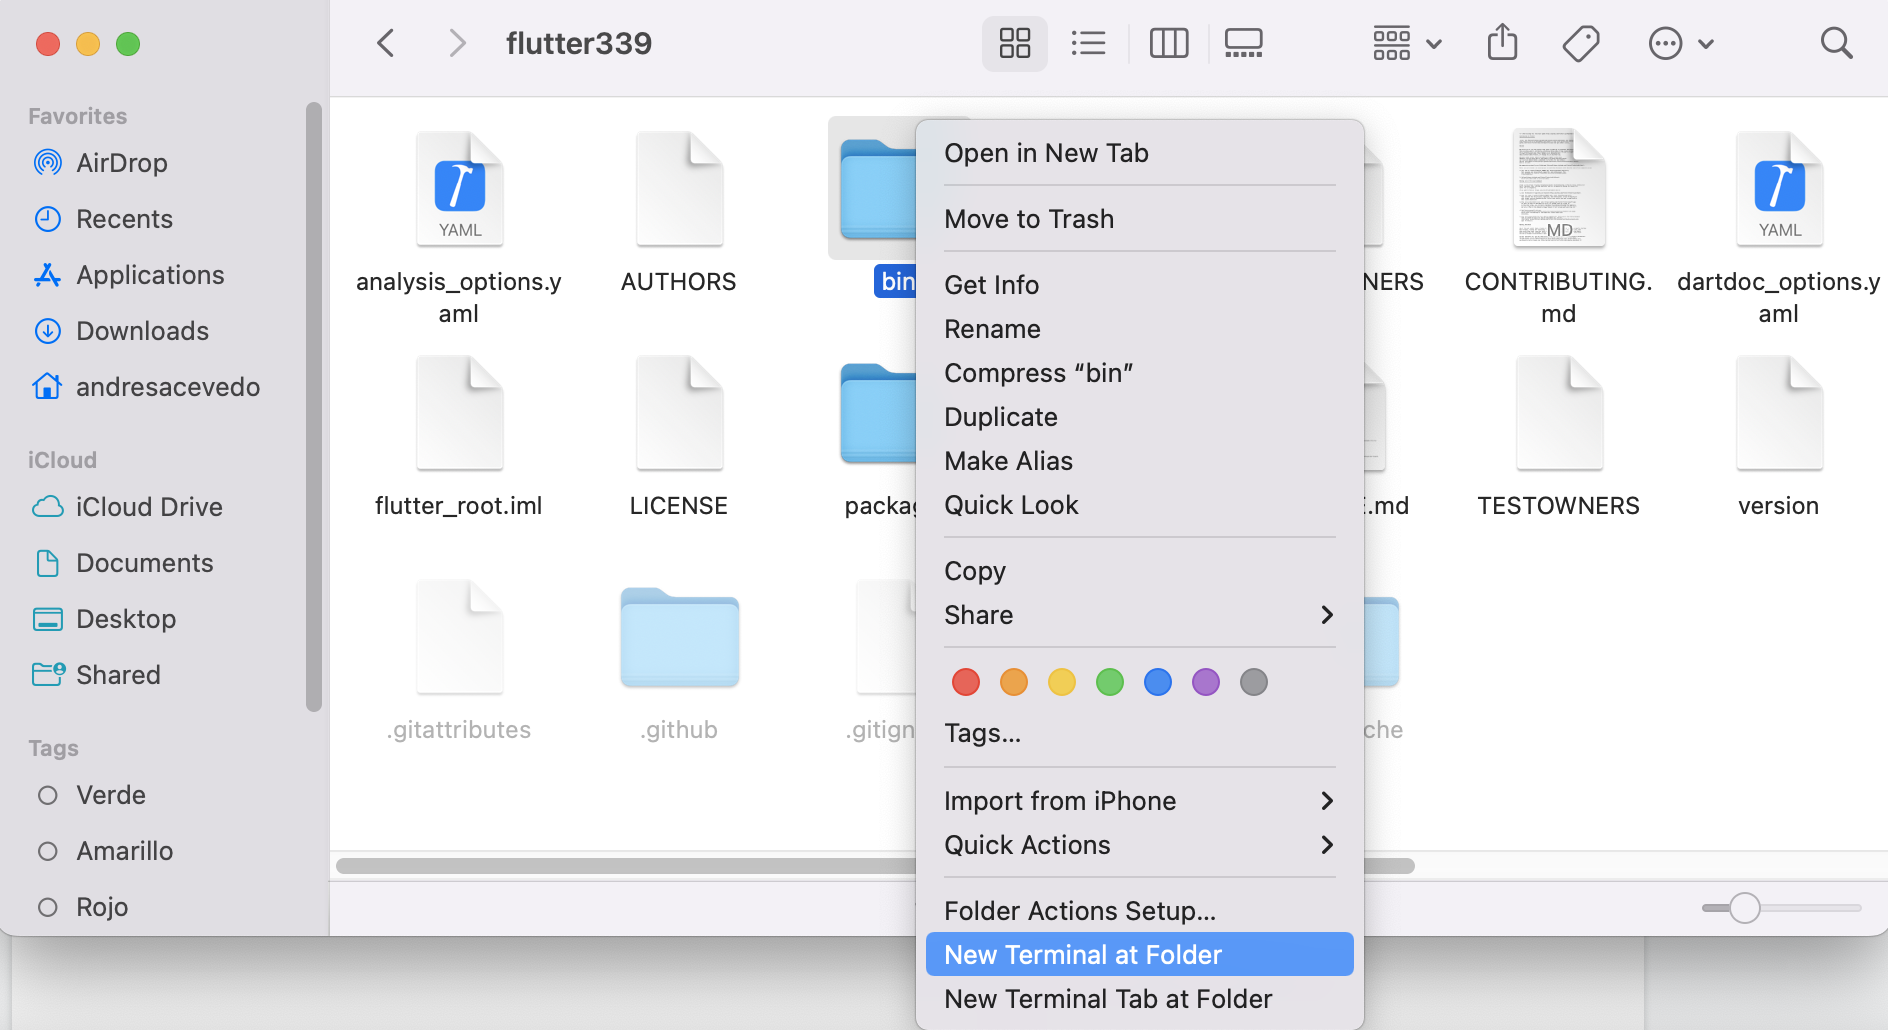 Opening flutter folder in a new terminal window